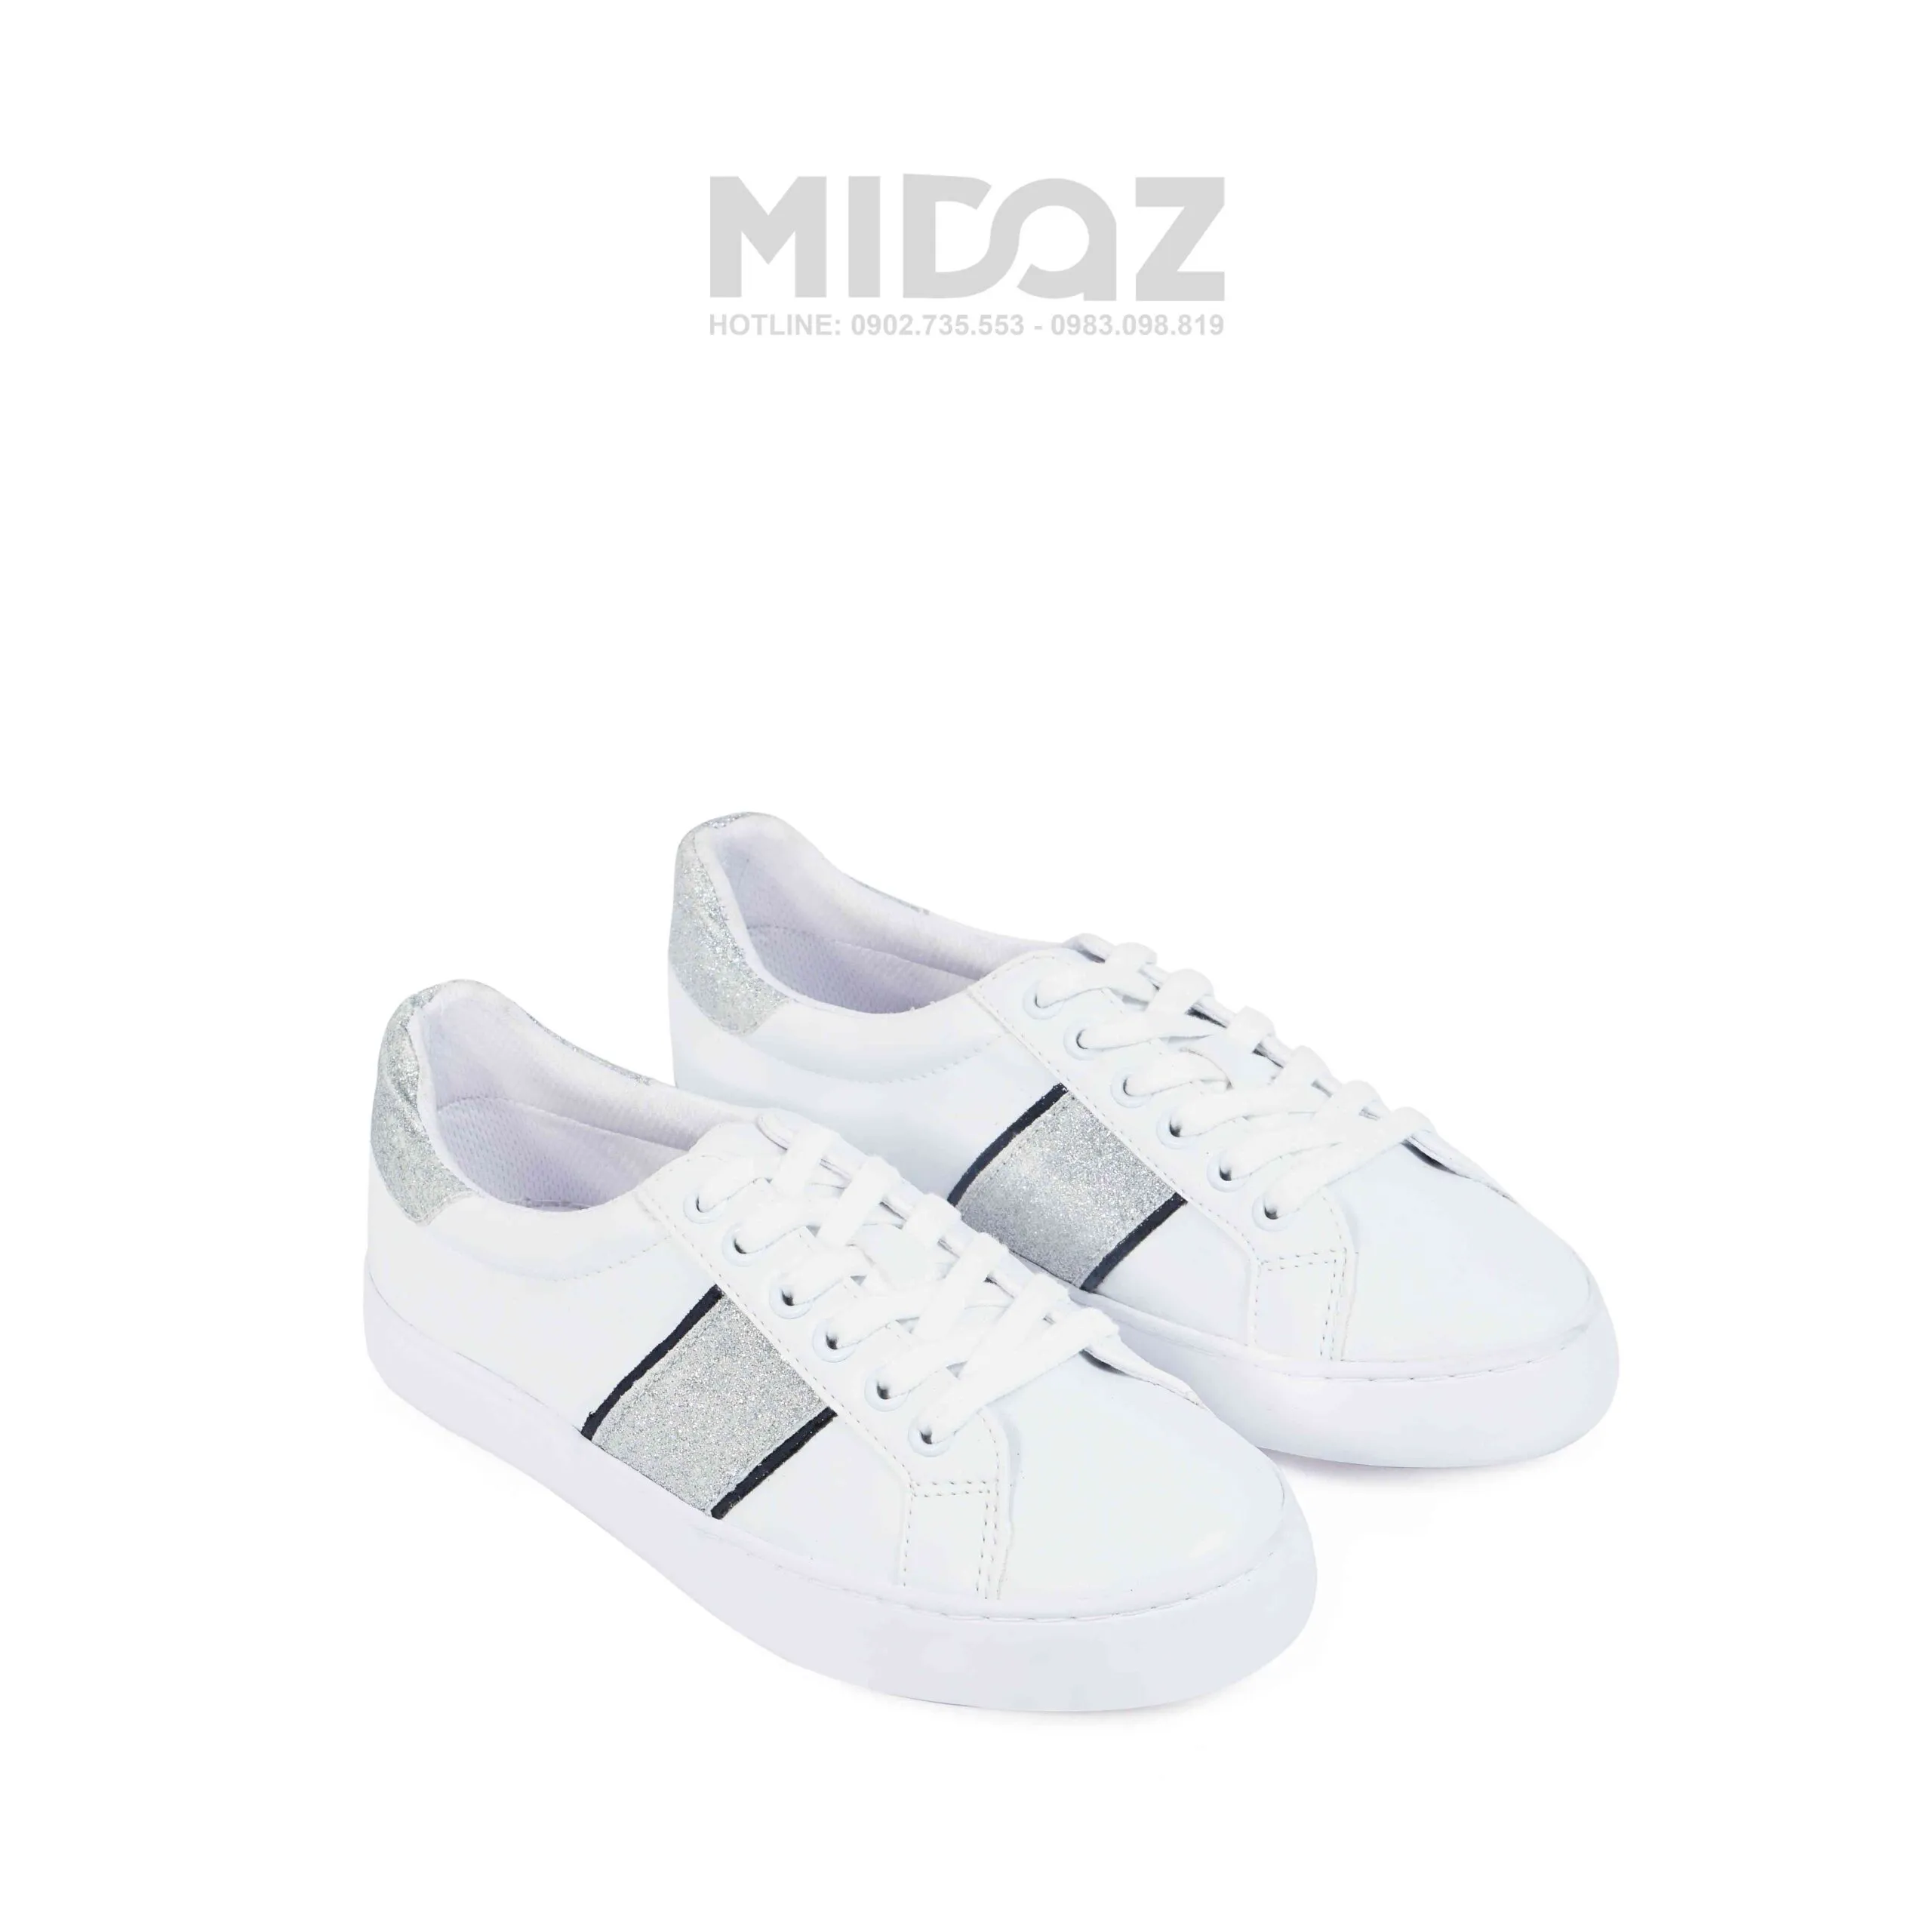 Midaz- BST mới nhất của thương hiệu hàng đầu về sneaker.